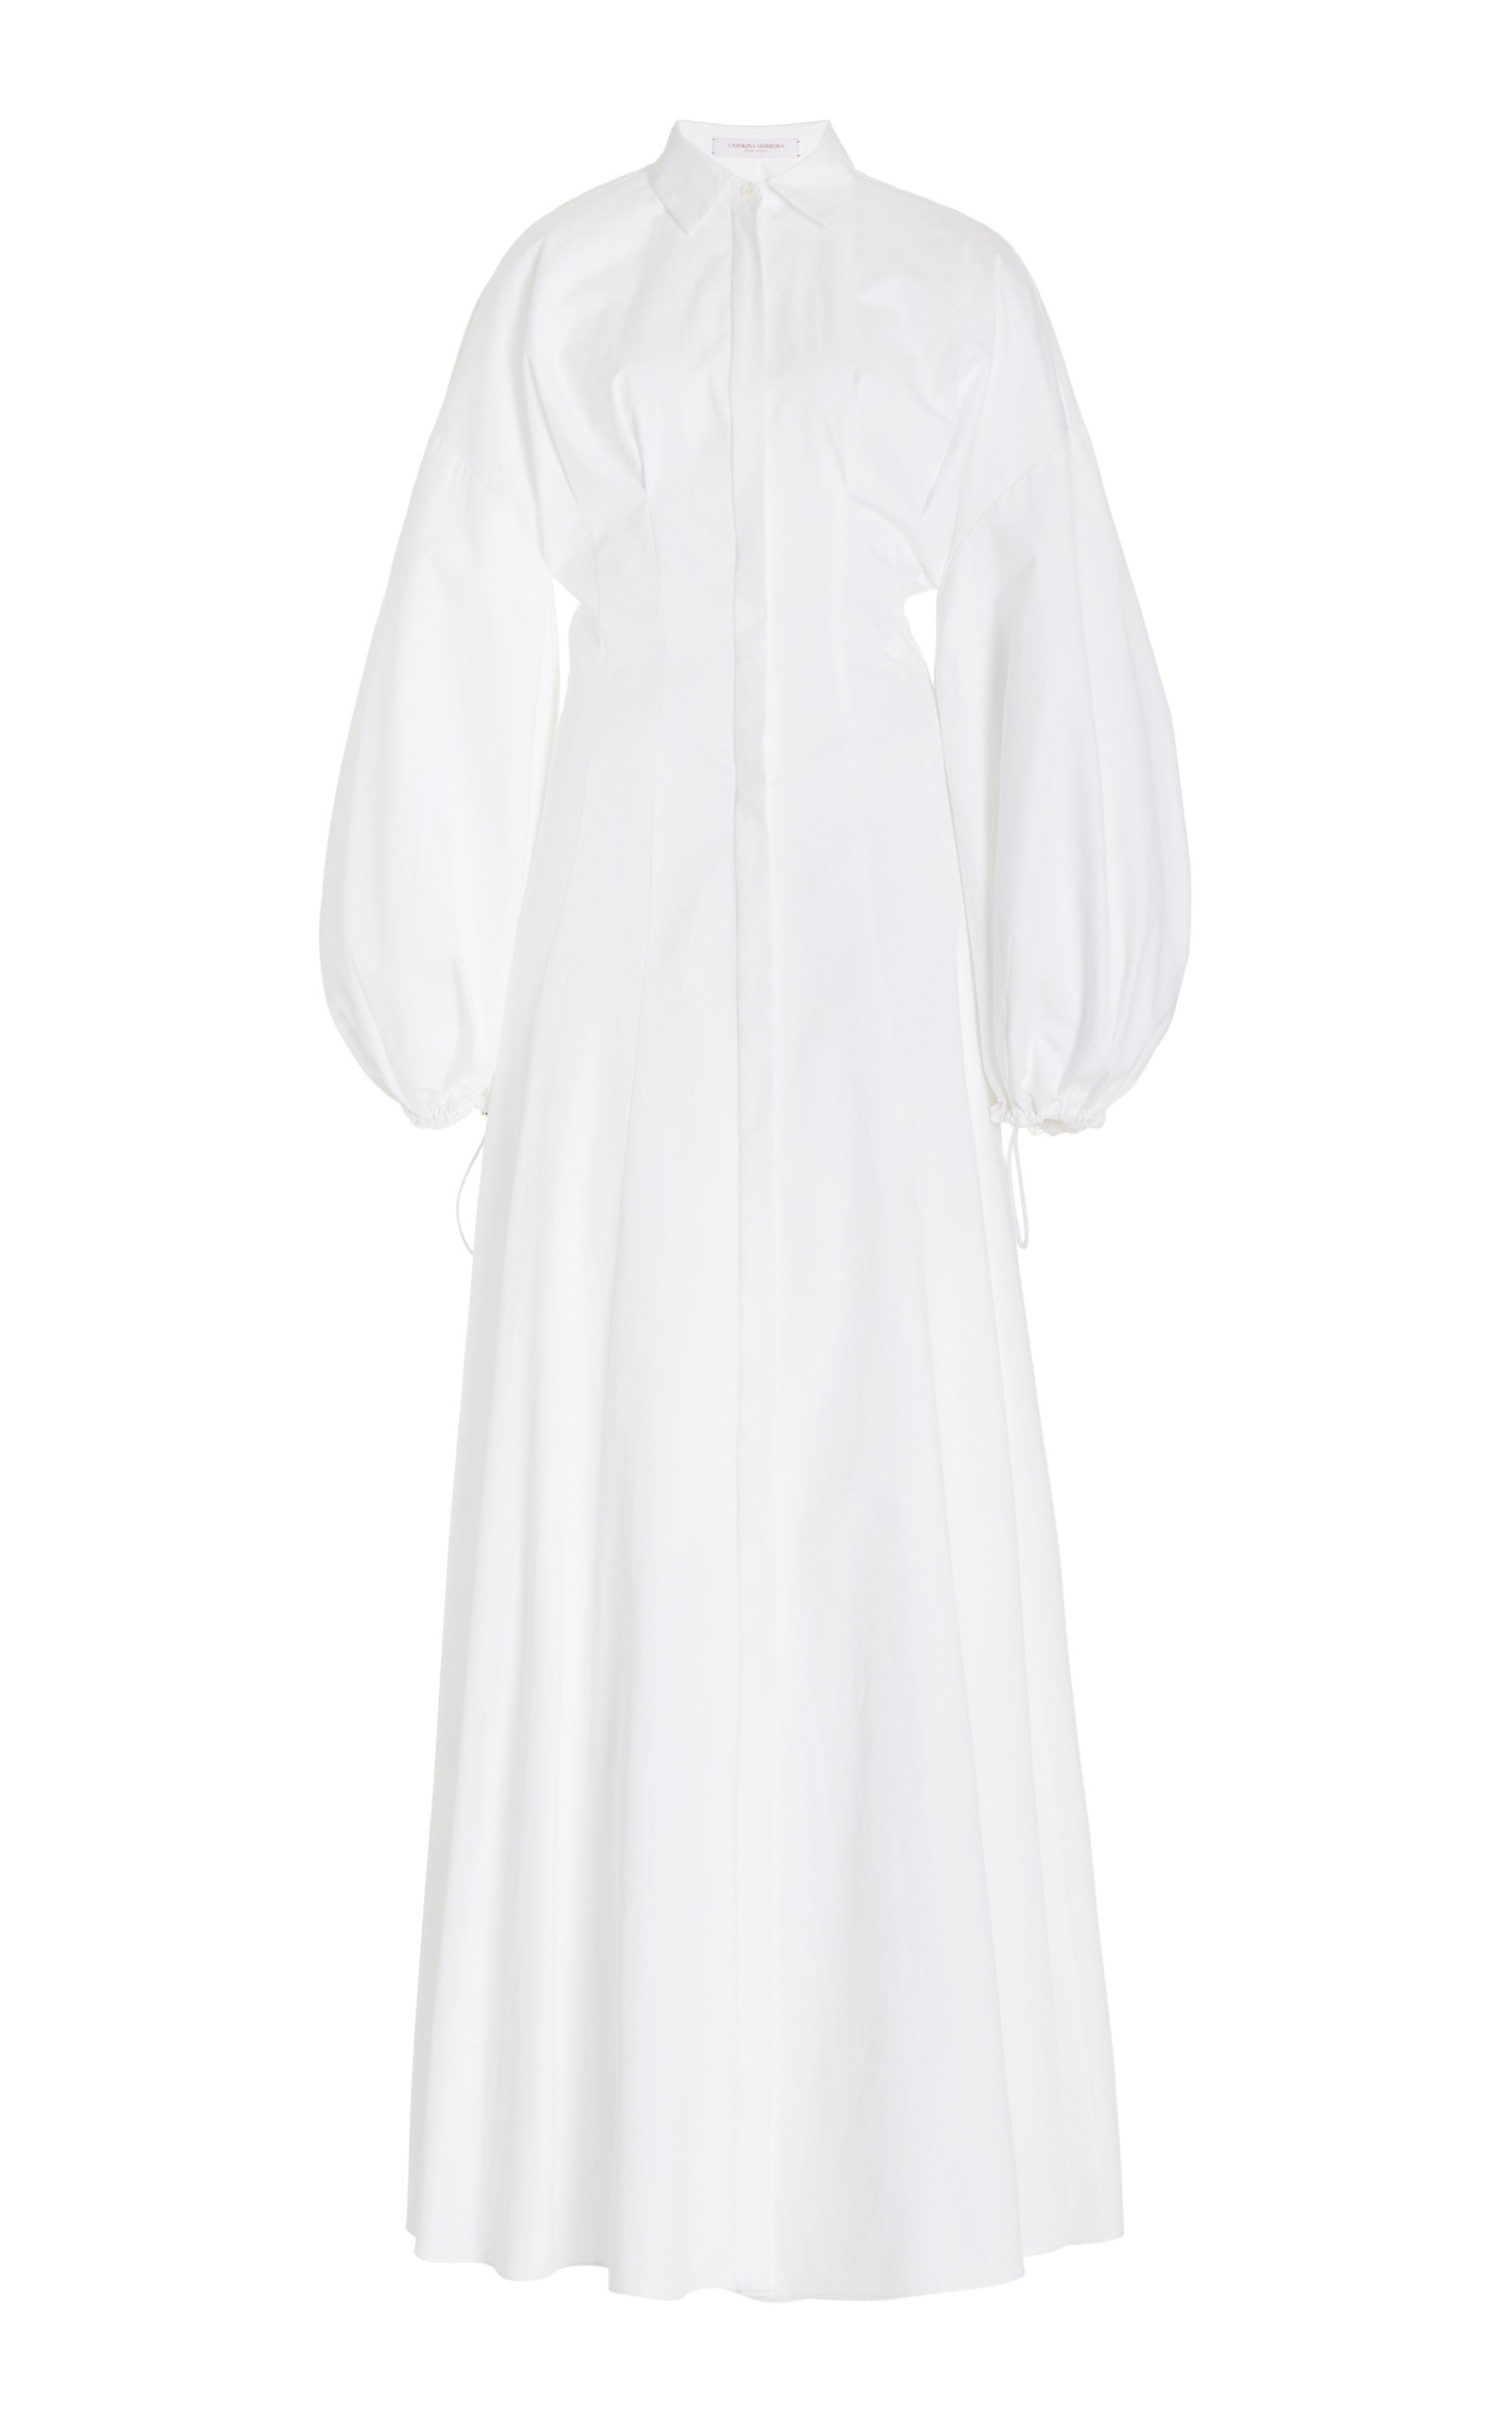 Carolina Herrera - Women's Collared Cotton Gown - White - US 6 - Moda Operandi